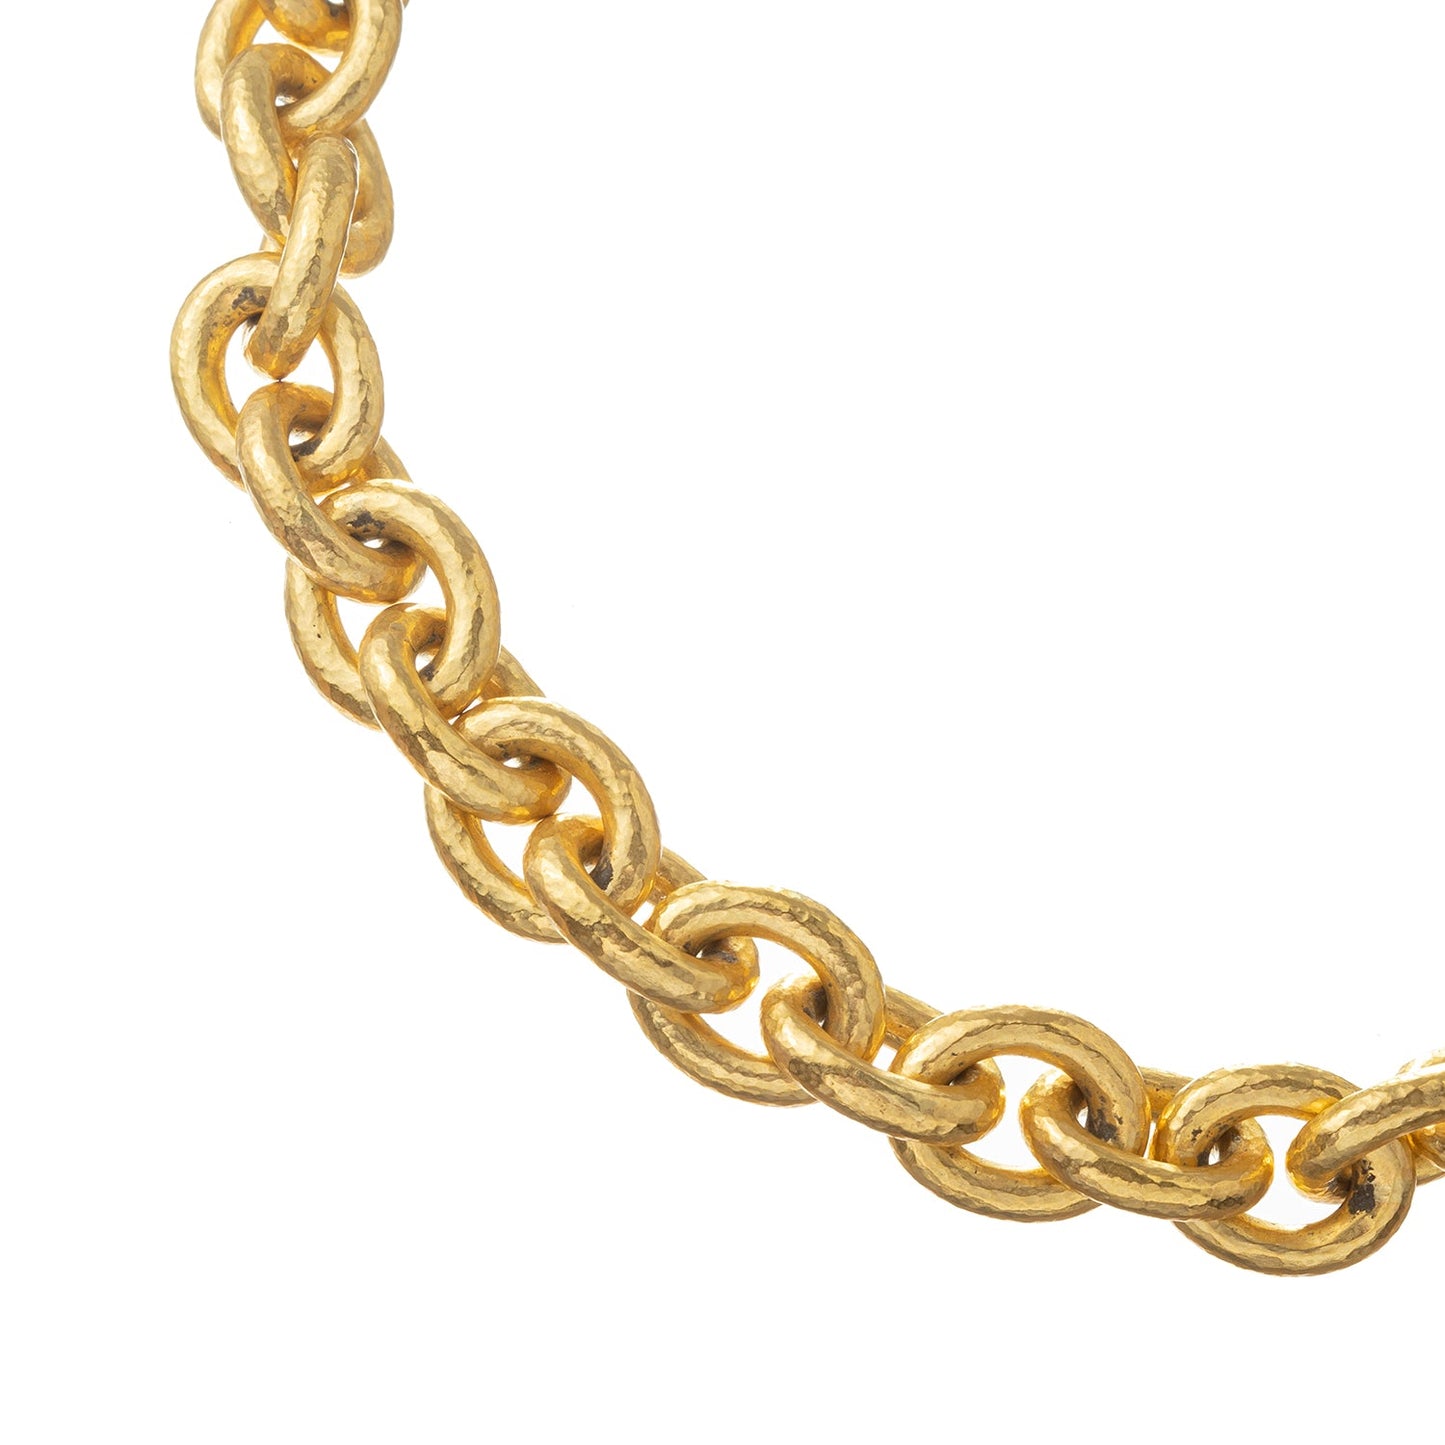 Elizabeth Locke - 19k Yellow Gold Heavy Oval Link Necklace